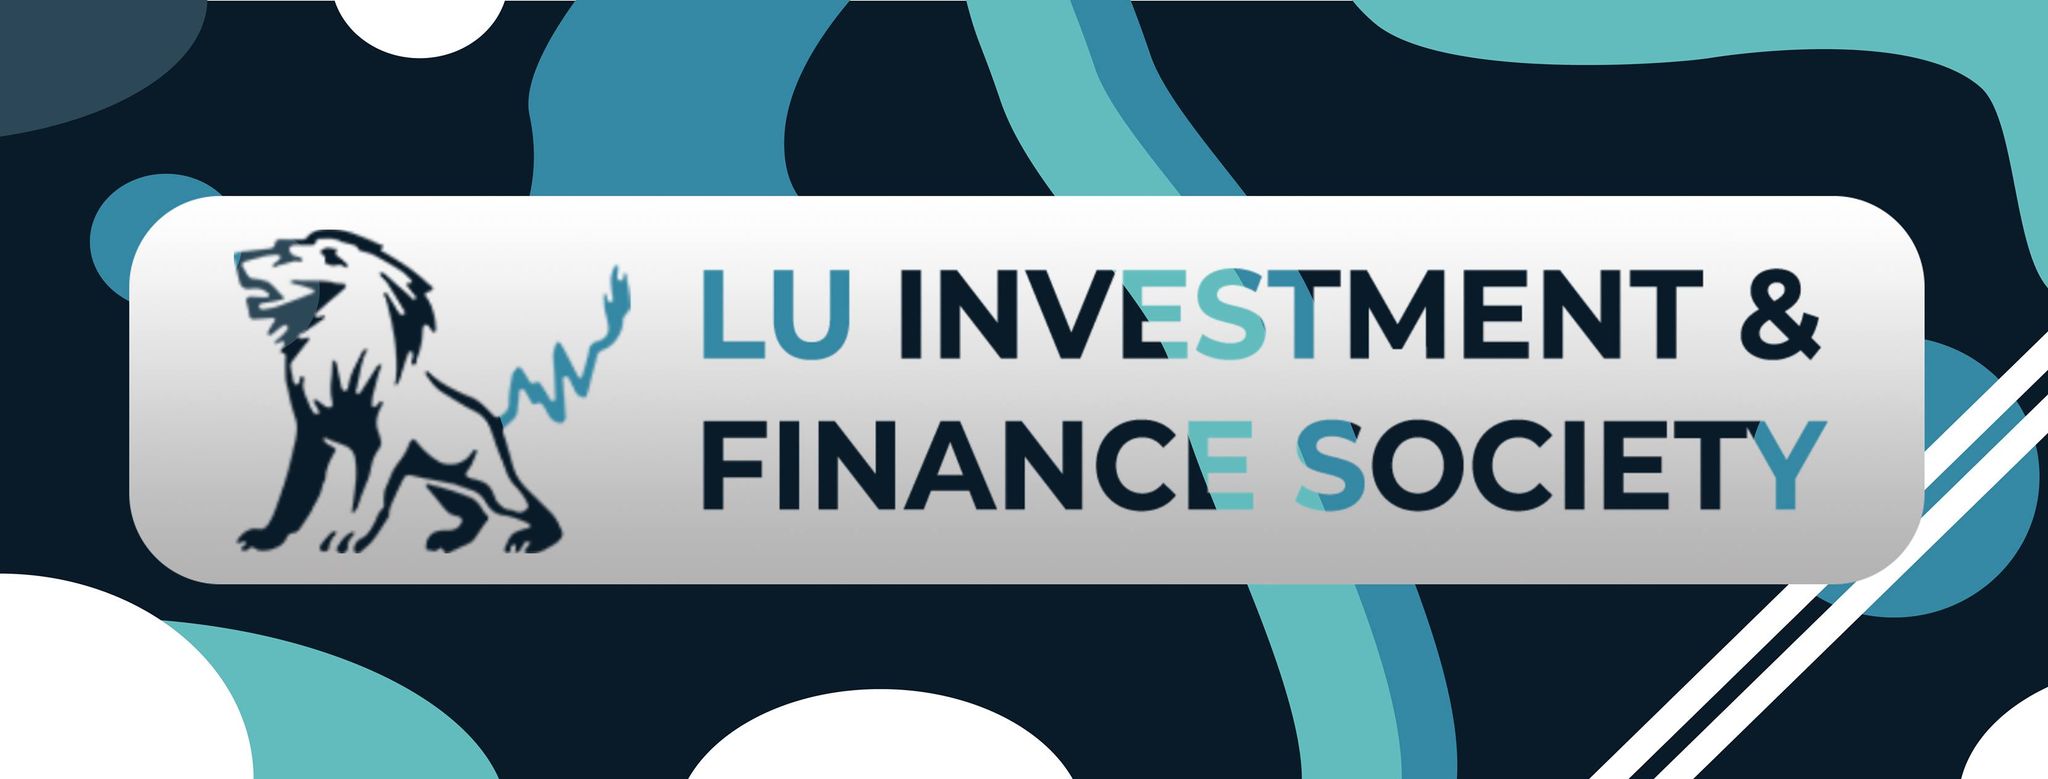 Banner for Lancaster Investment & Finance Society 